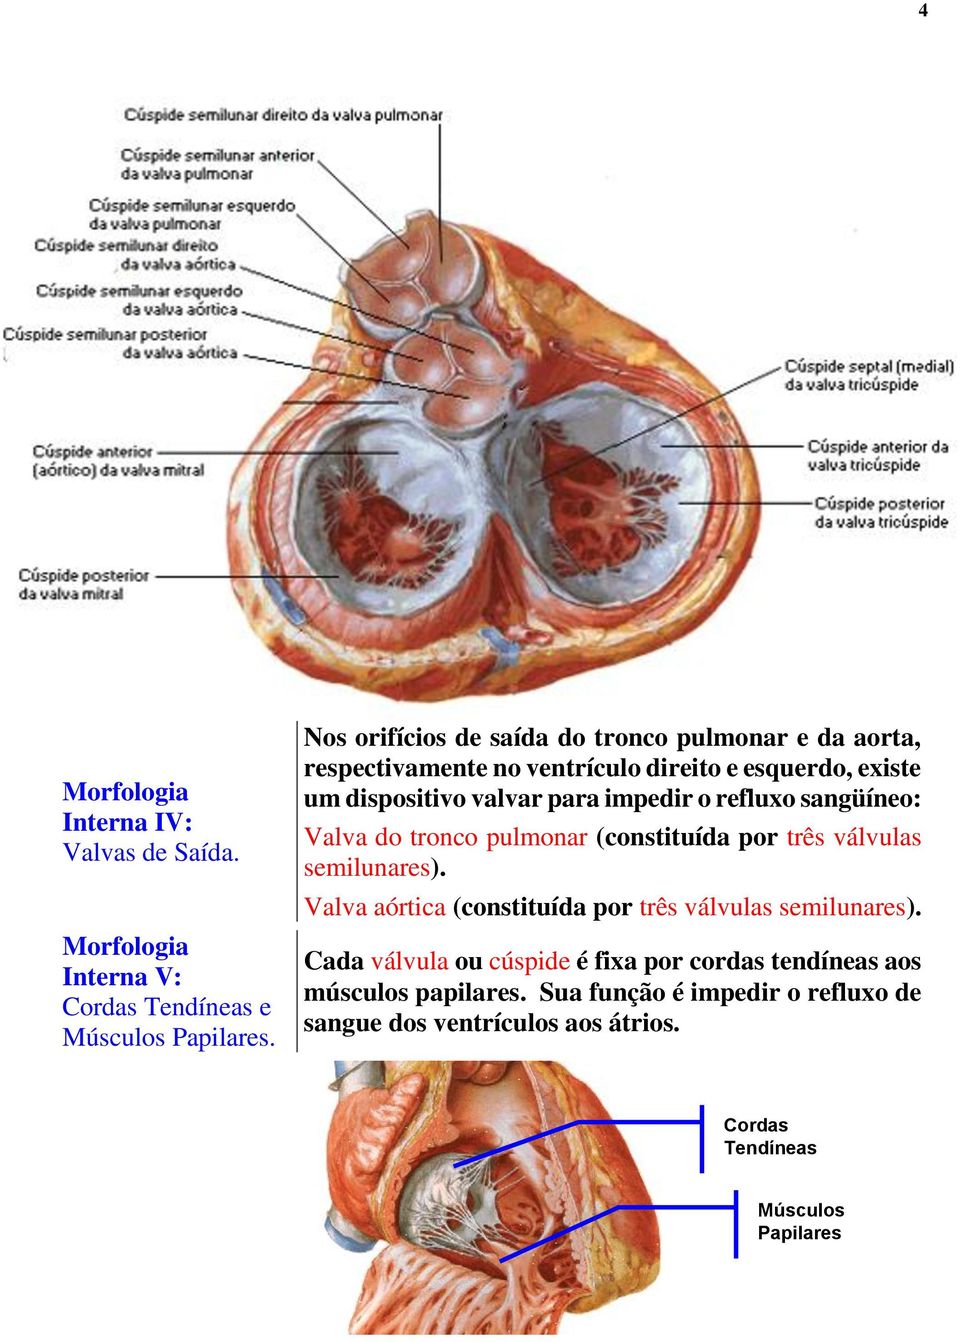 impedir o refluxo sangüíneo: Valva do tronco pulmonar (constituída por três válvulas semilunares).